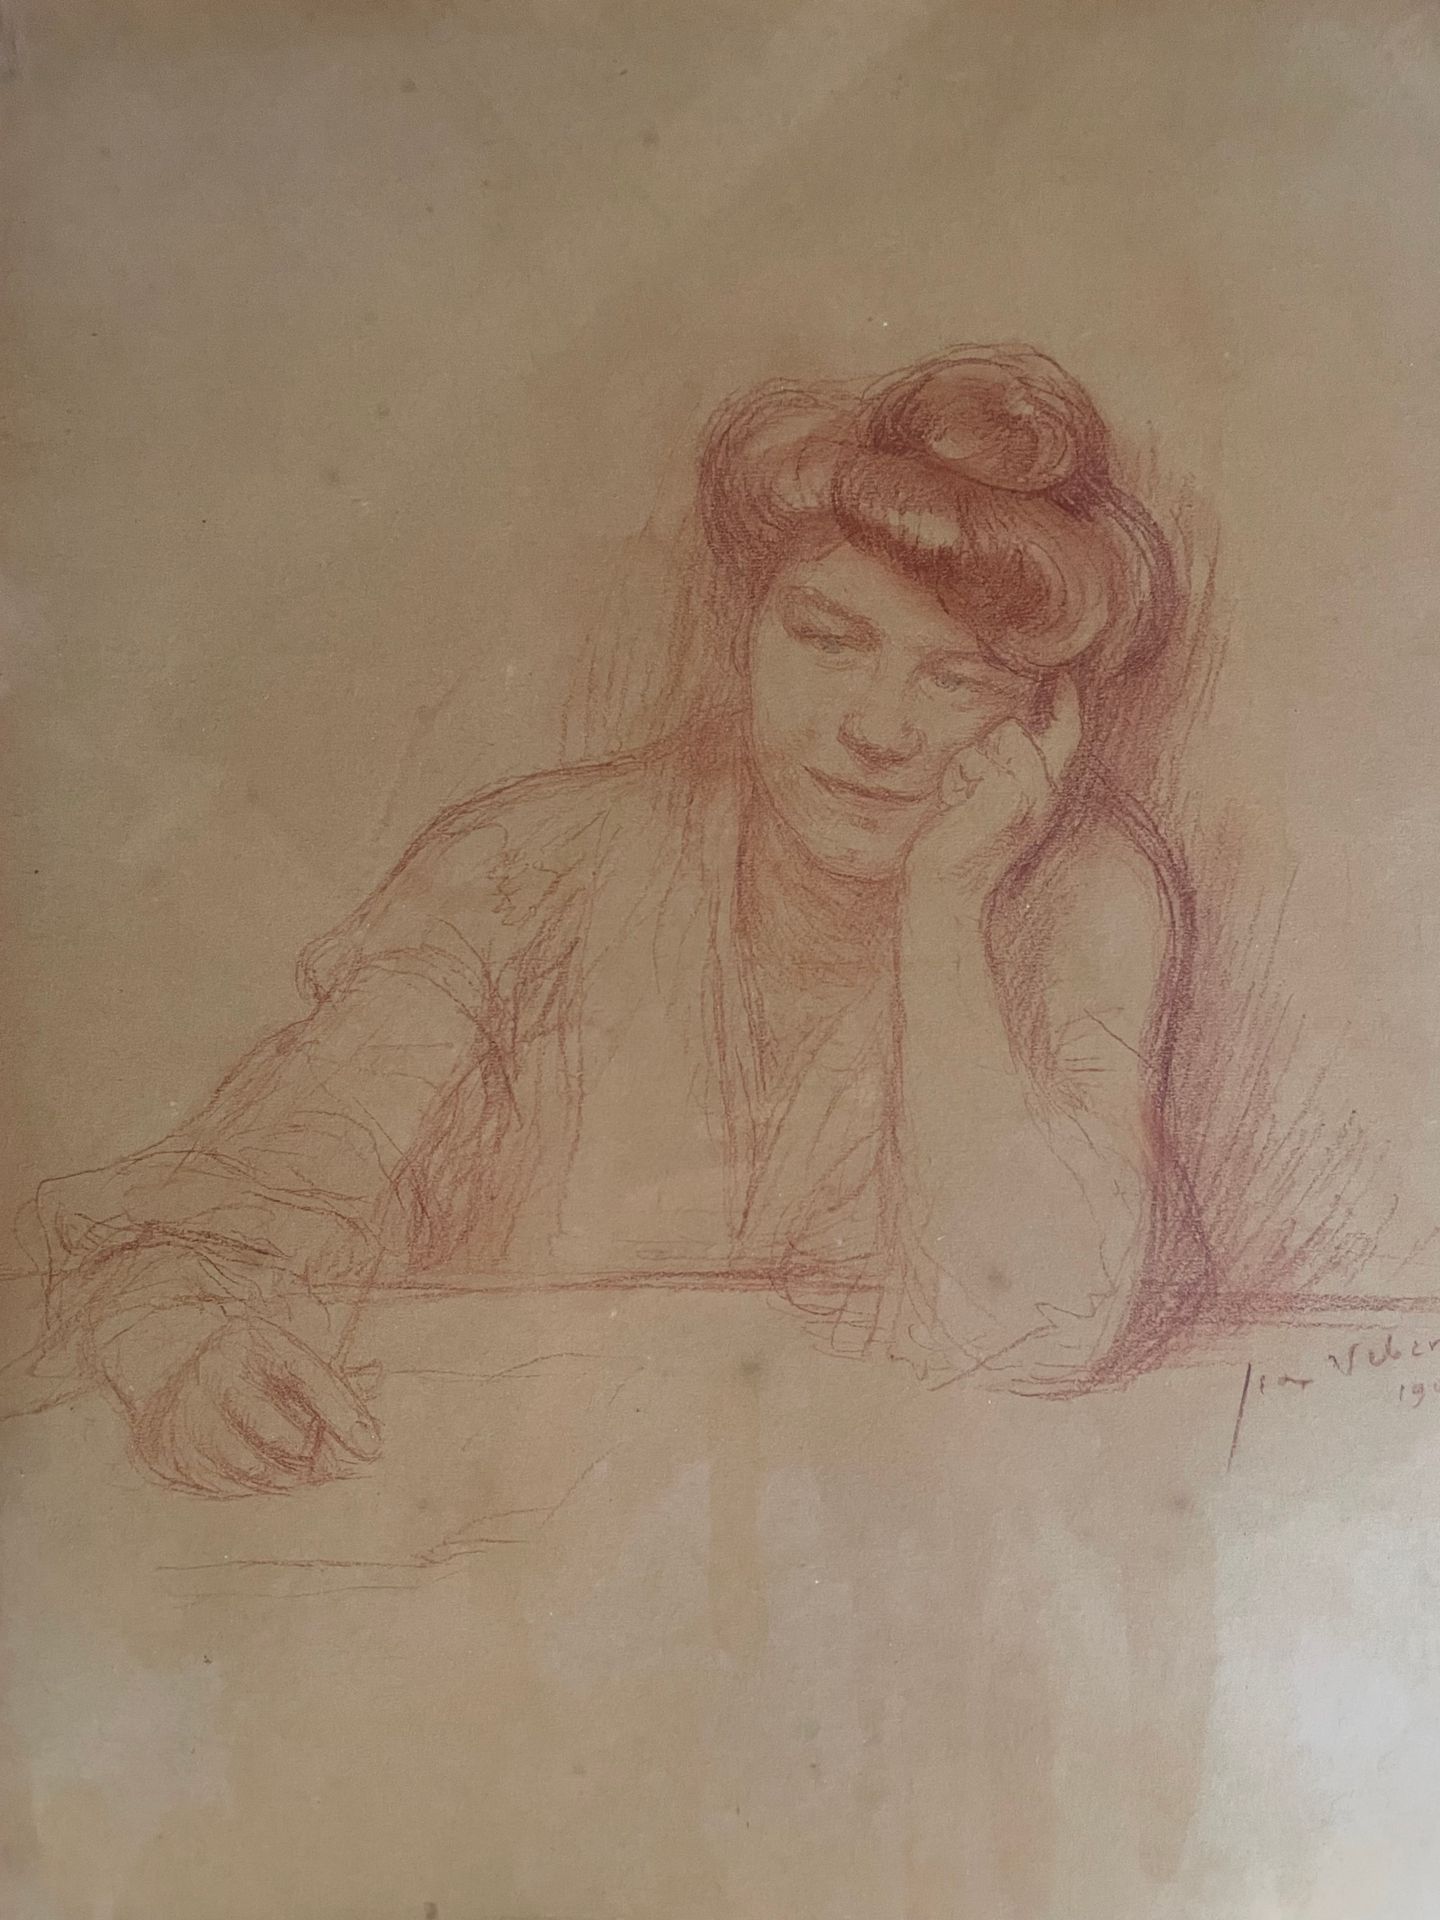 Null Mannette的有框作品包括。

- Jean VEBER (1868-1928), 五幅版画，包括:

妇女写作的肖像，1904年

斑点、污点
&hellip;